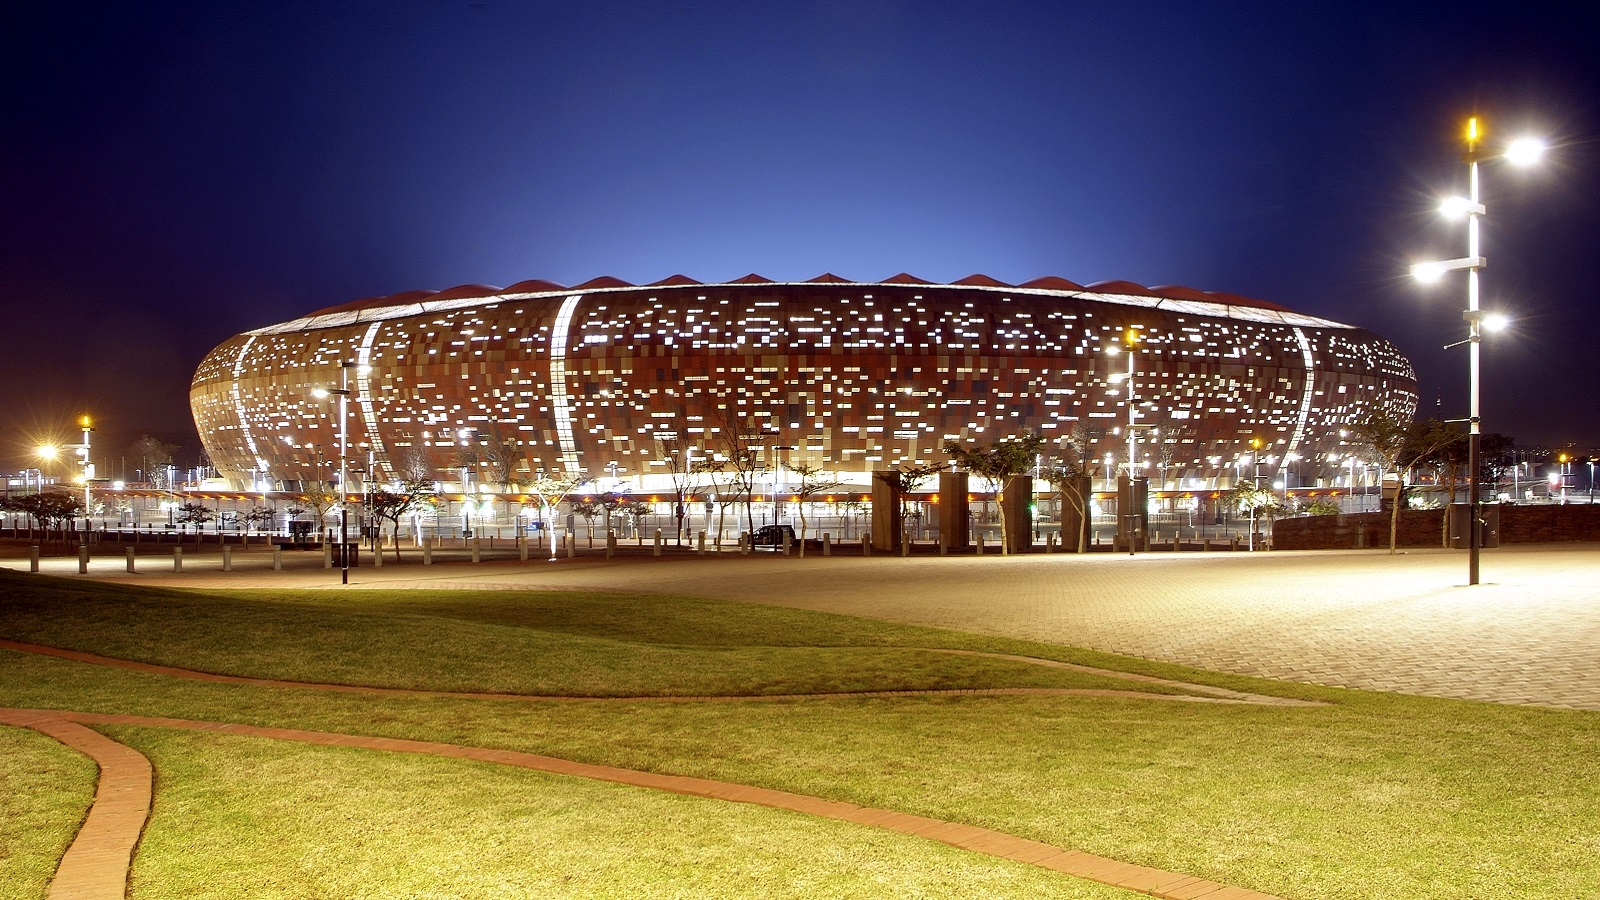 Khung cảnh bên ngoài của sân bóng lớn nhất châu Phi Soccer City